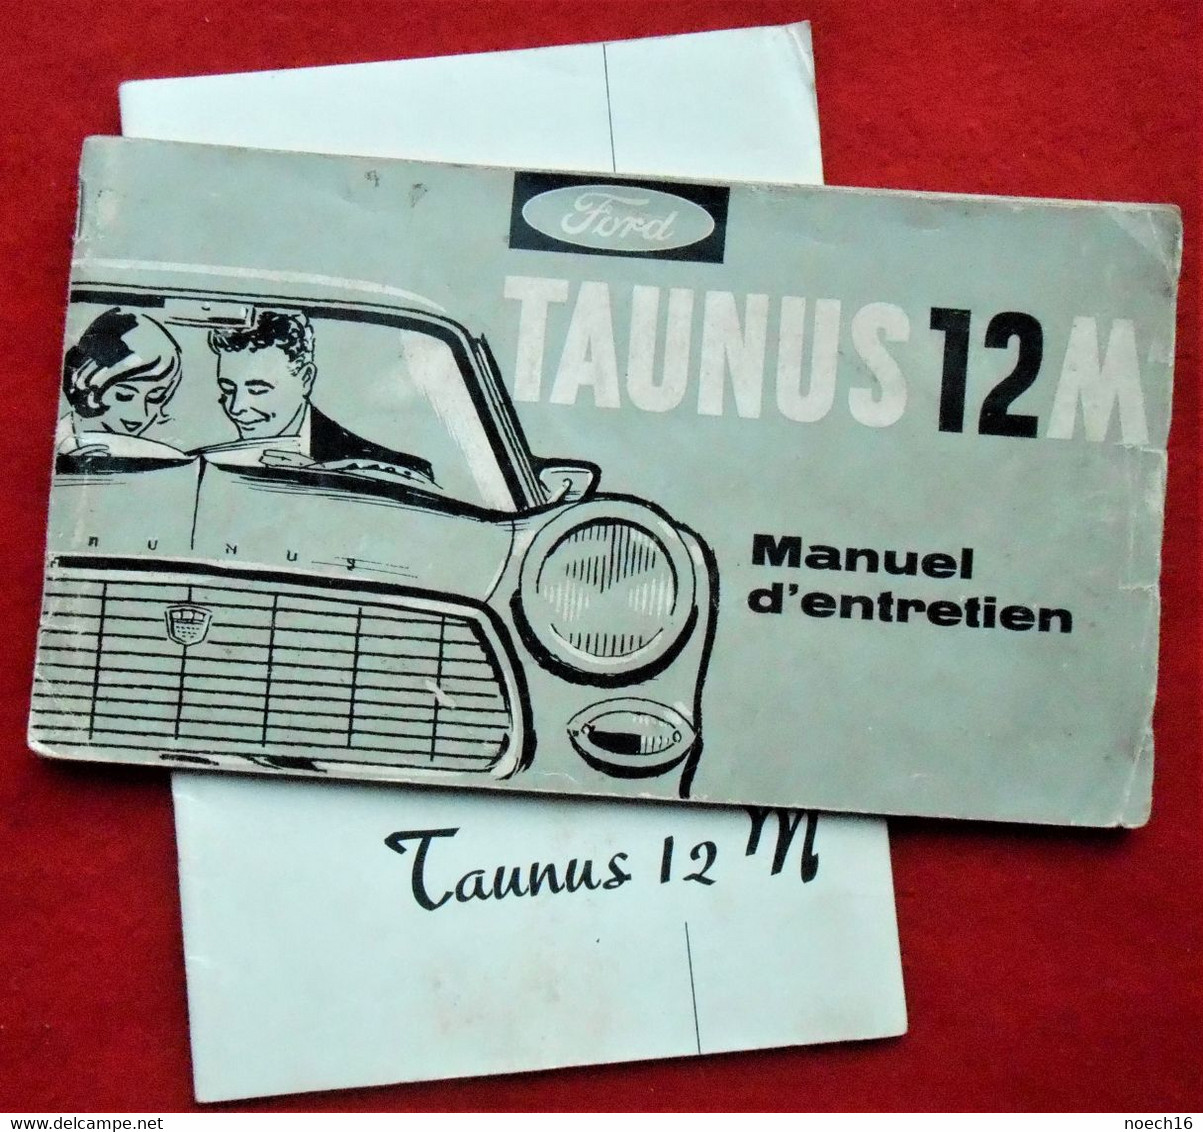 2 Carnets - Ford Taunus 12 M - Manuel D'entretien & Notice D'entretien - Auto/Moto